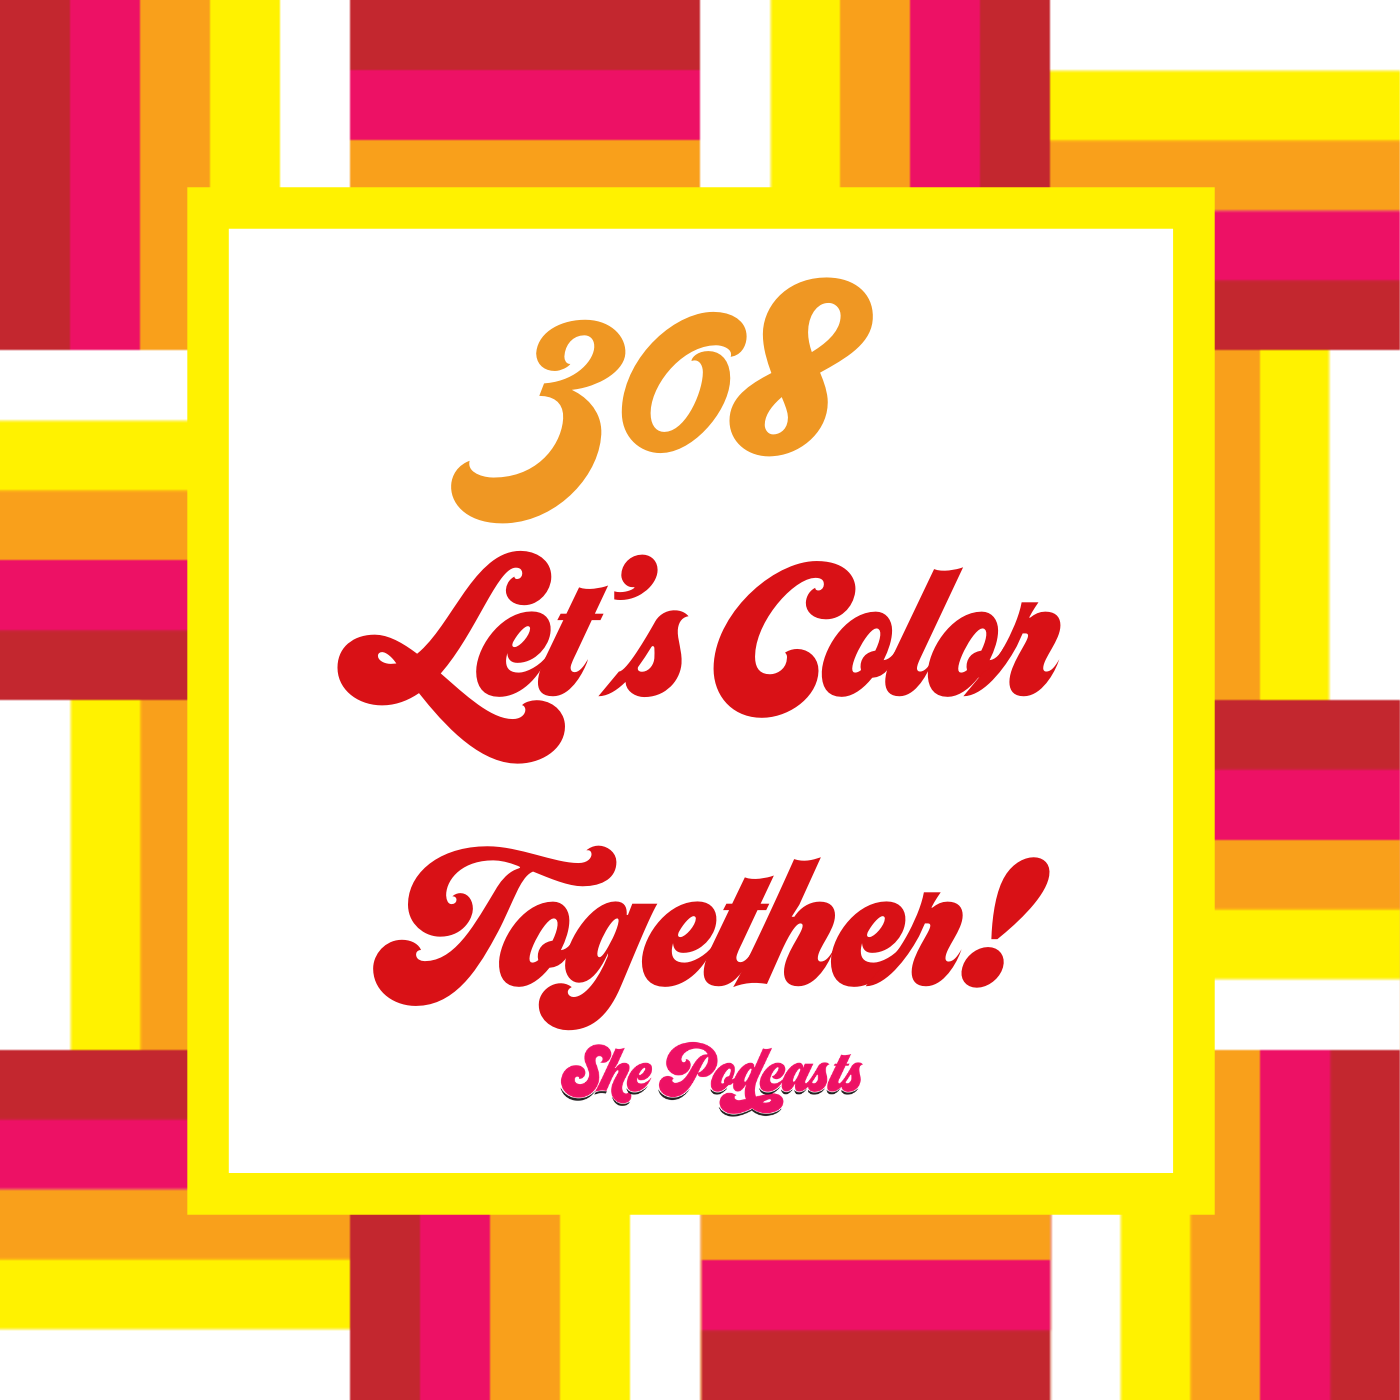 308 Let’s Color Together